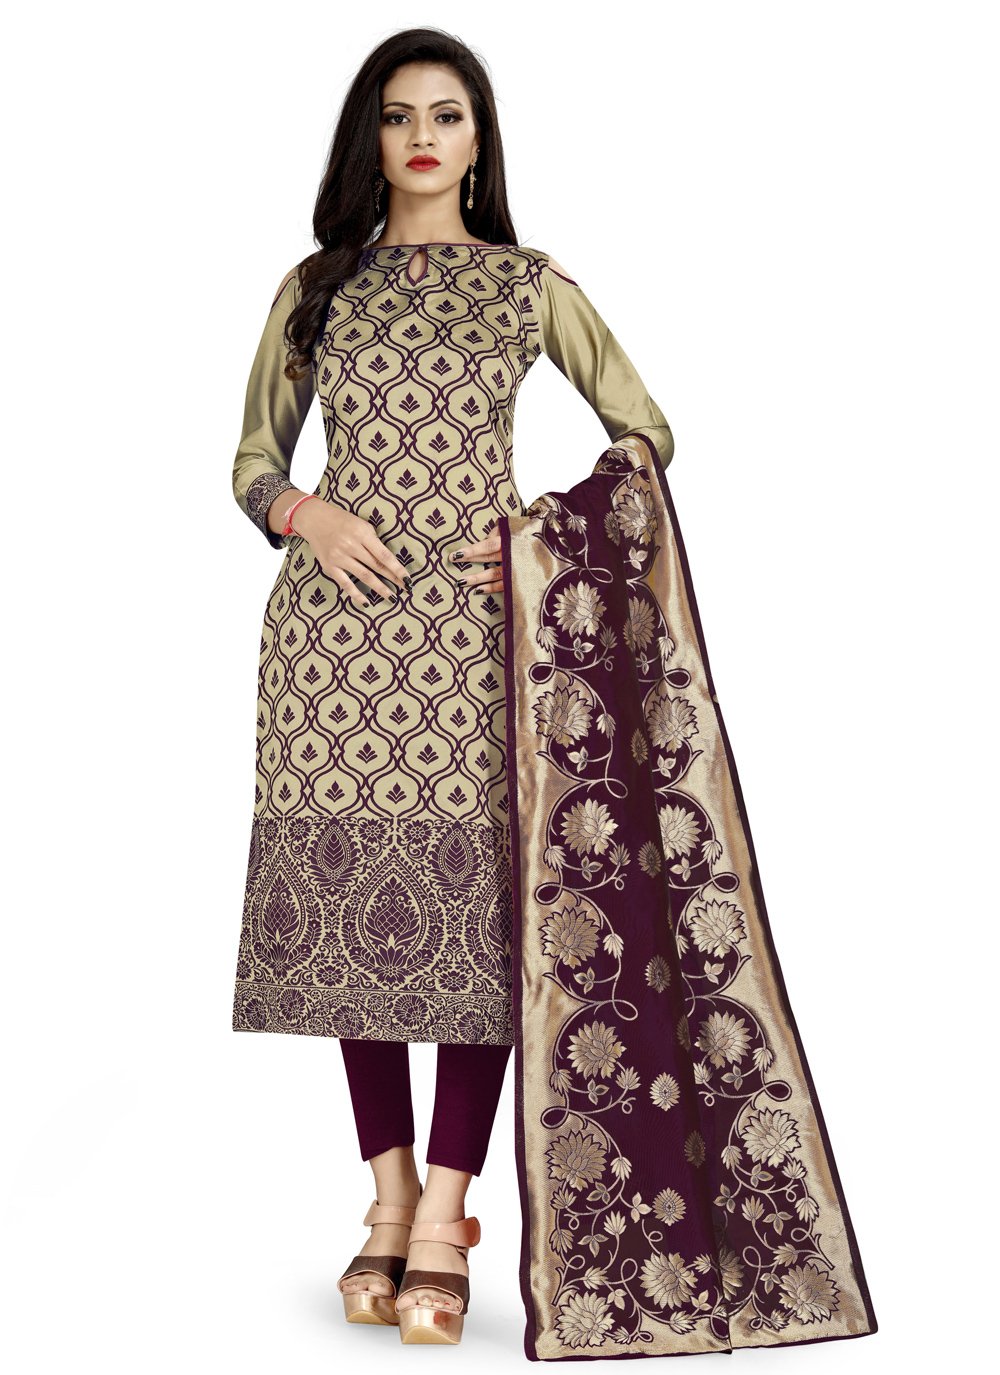 Top more than 65 flipkart readymade salwar suits best